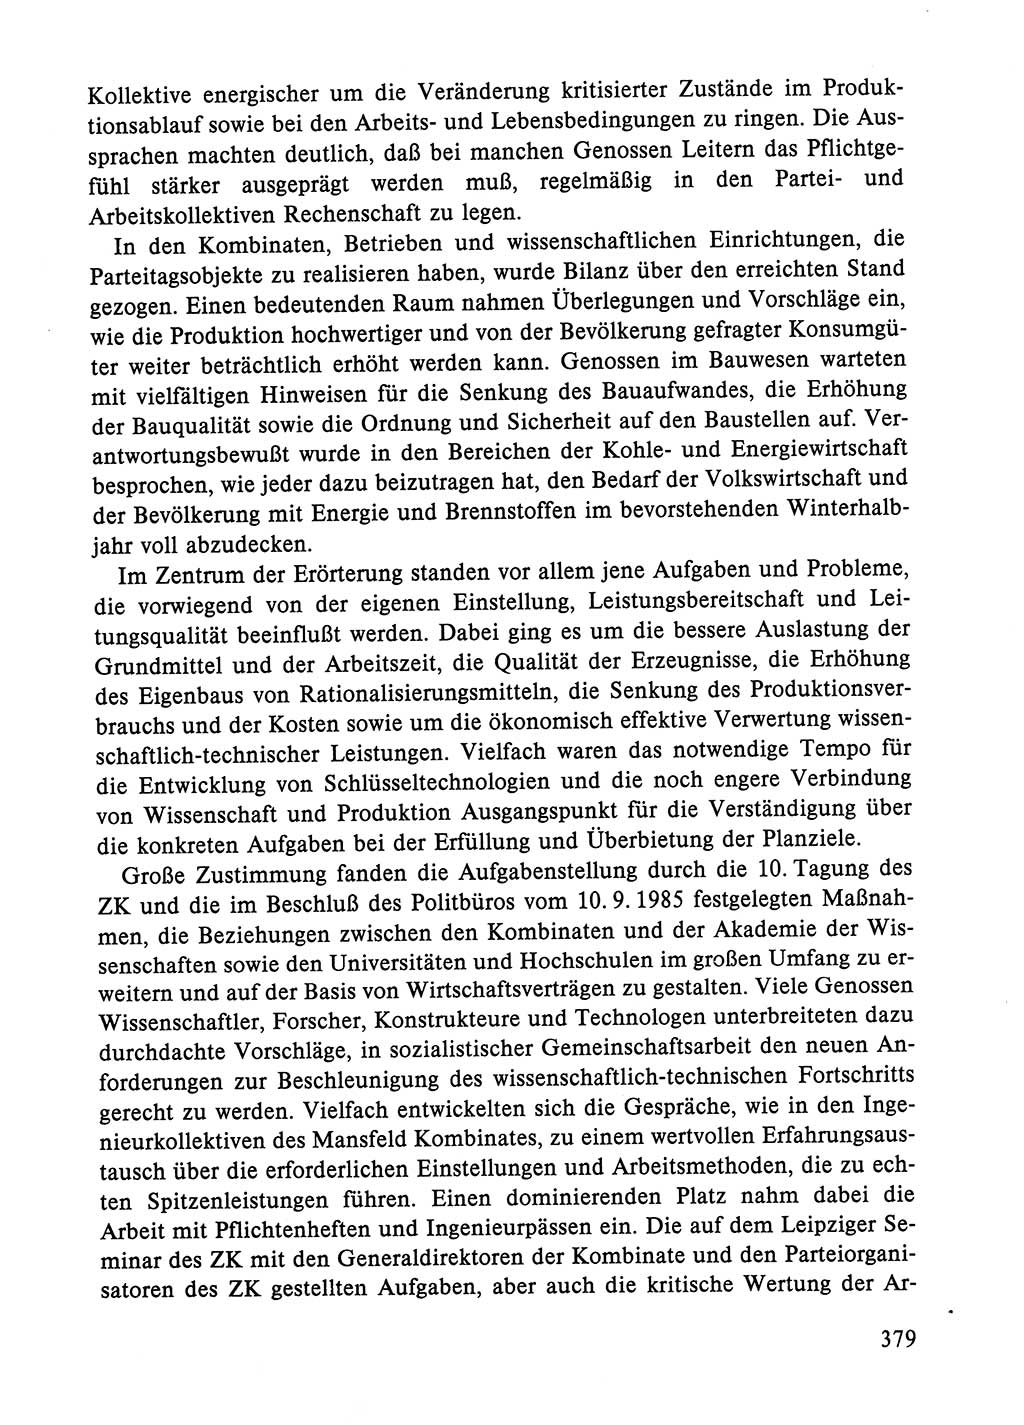 Dokumente der Sozialistischen Einheitspartei Deutschlands (SED) [Deutsche Demokratische Republik (DDR)] 1984-1985, Seite 379 (Dok. SED DDR 1984-1985, S. 379)